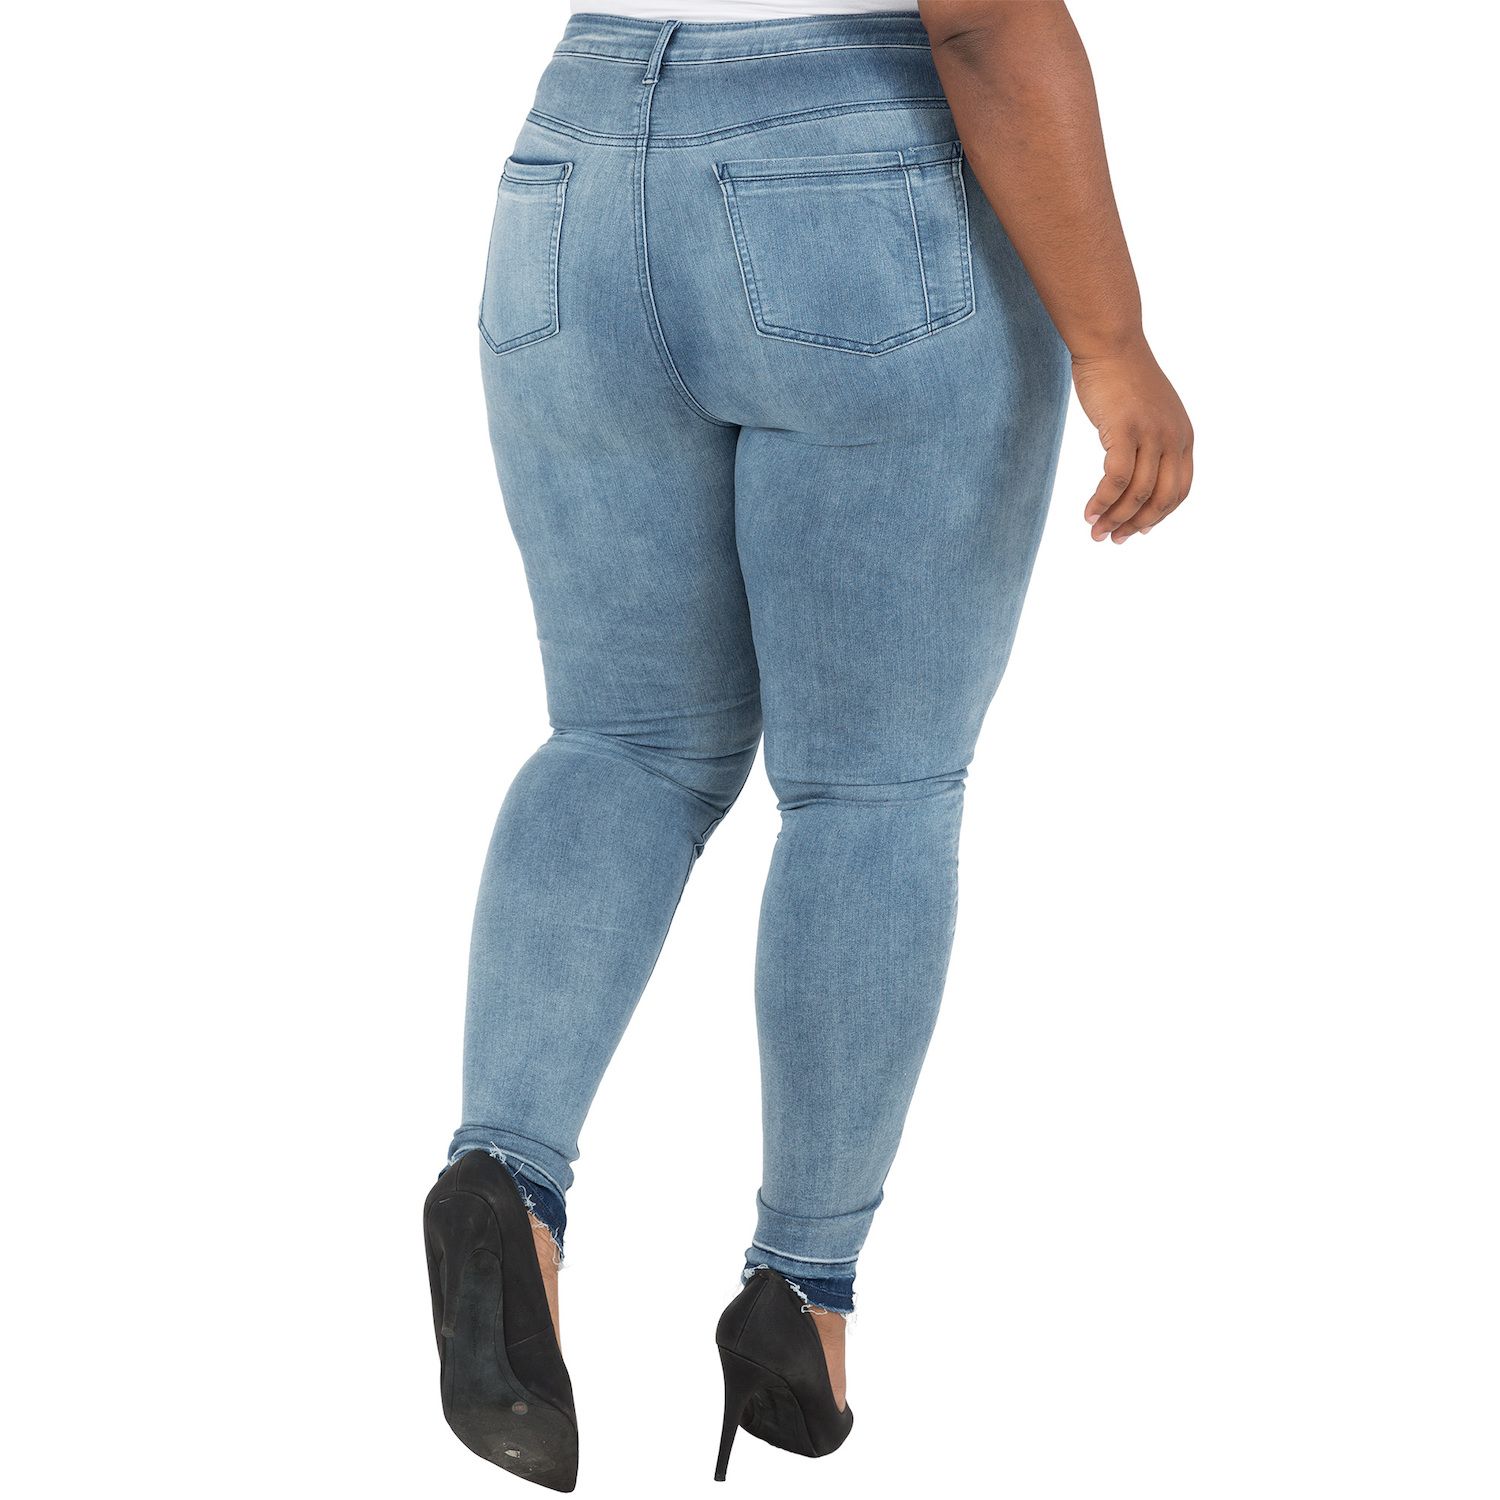 Женские джинсы больших размеров с пышной посадкой Corrine с потрепанным краем Poetic Justice justice planisphere